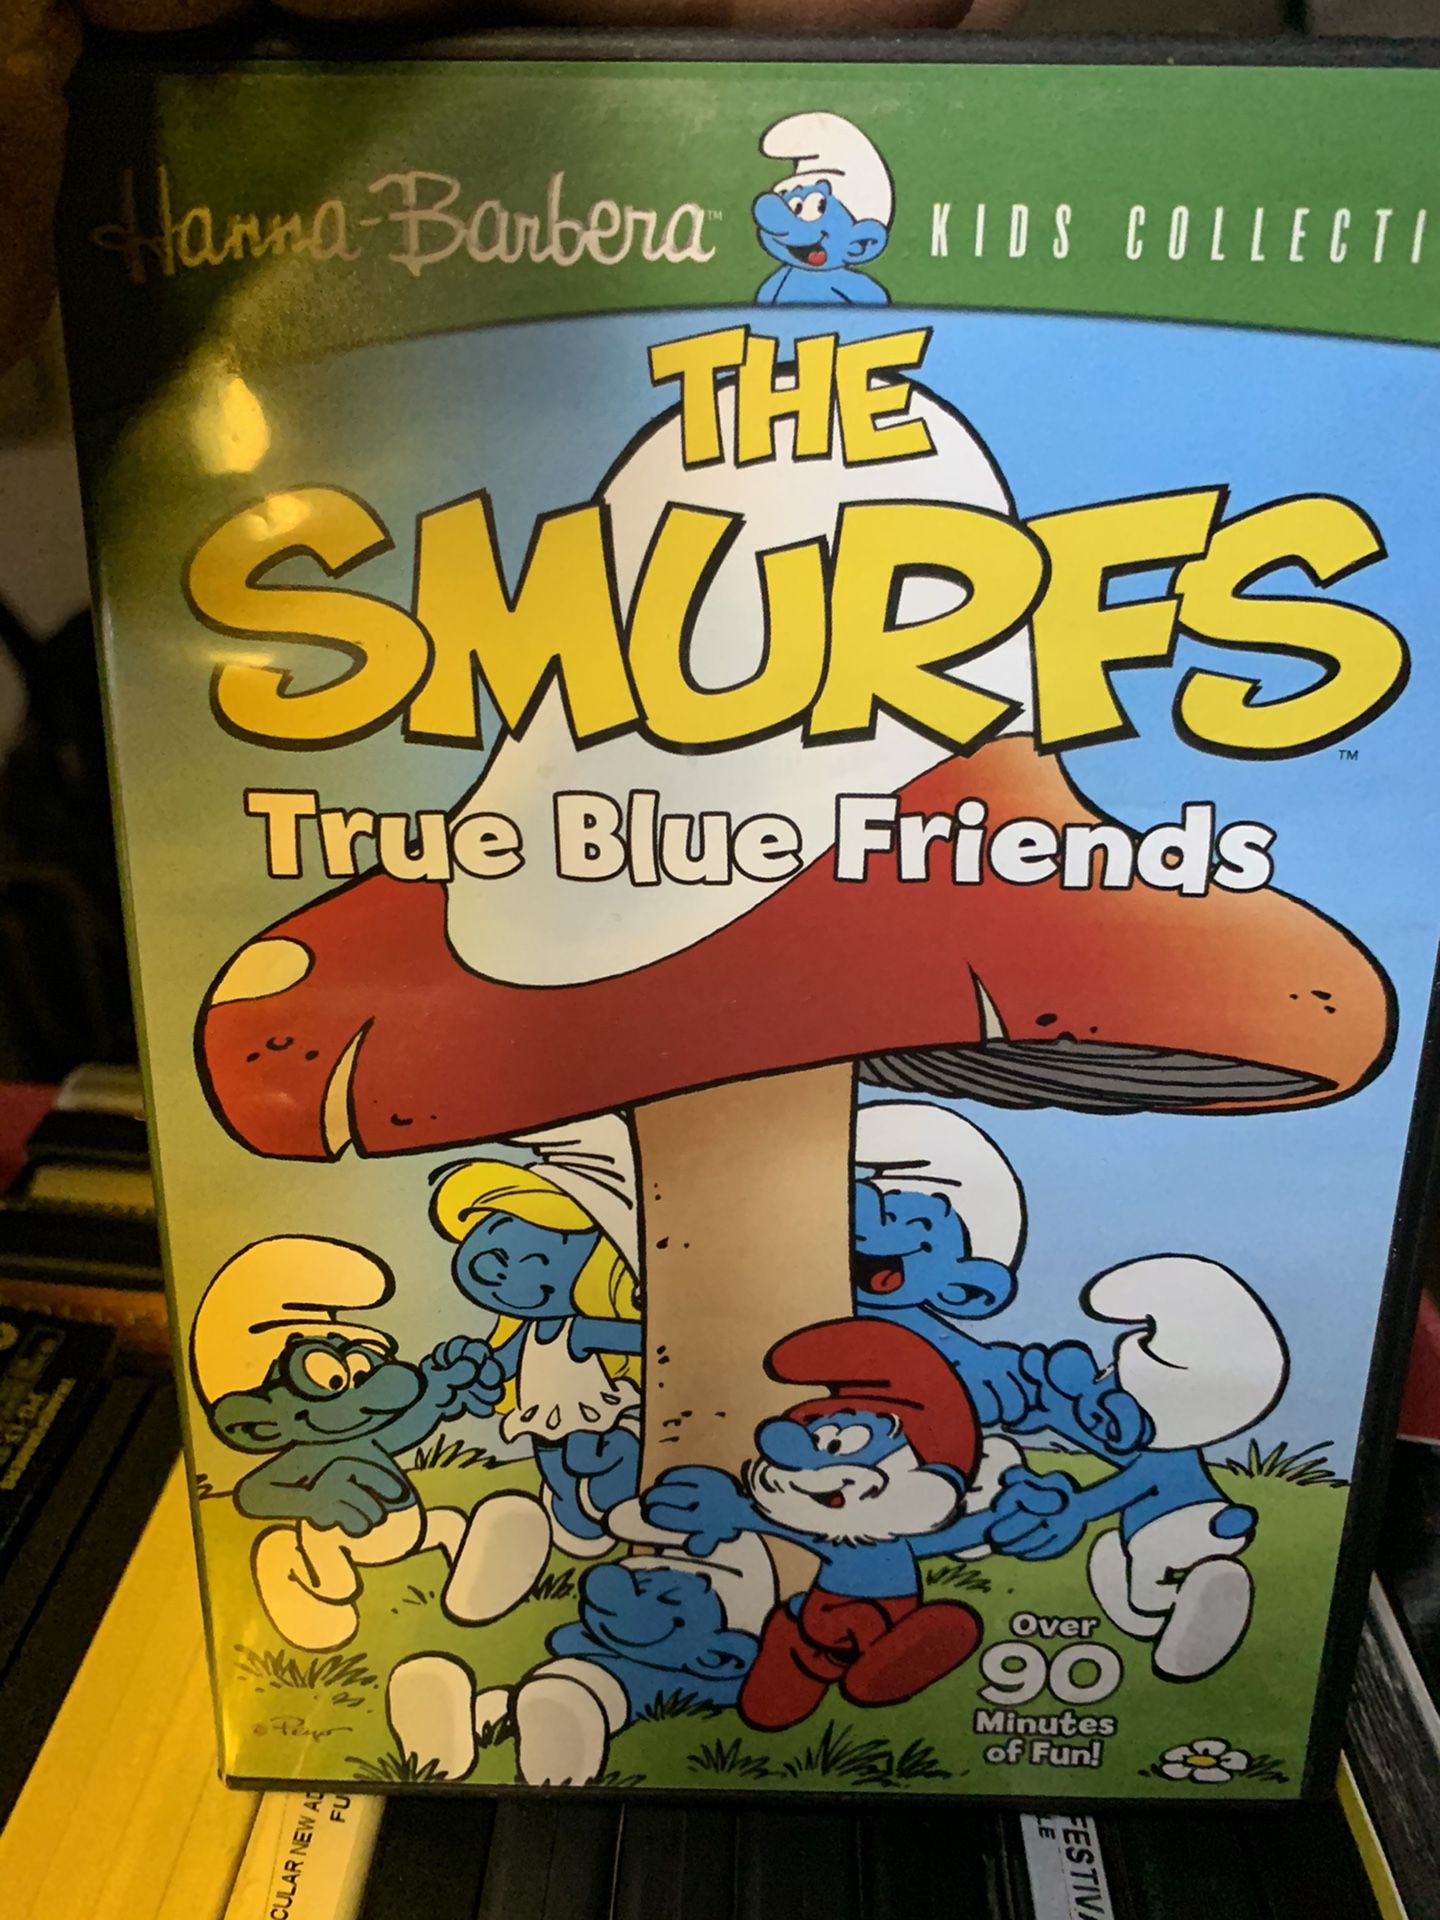 Smurfs cartoons $5